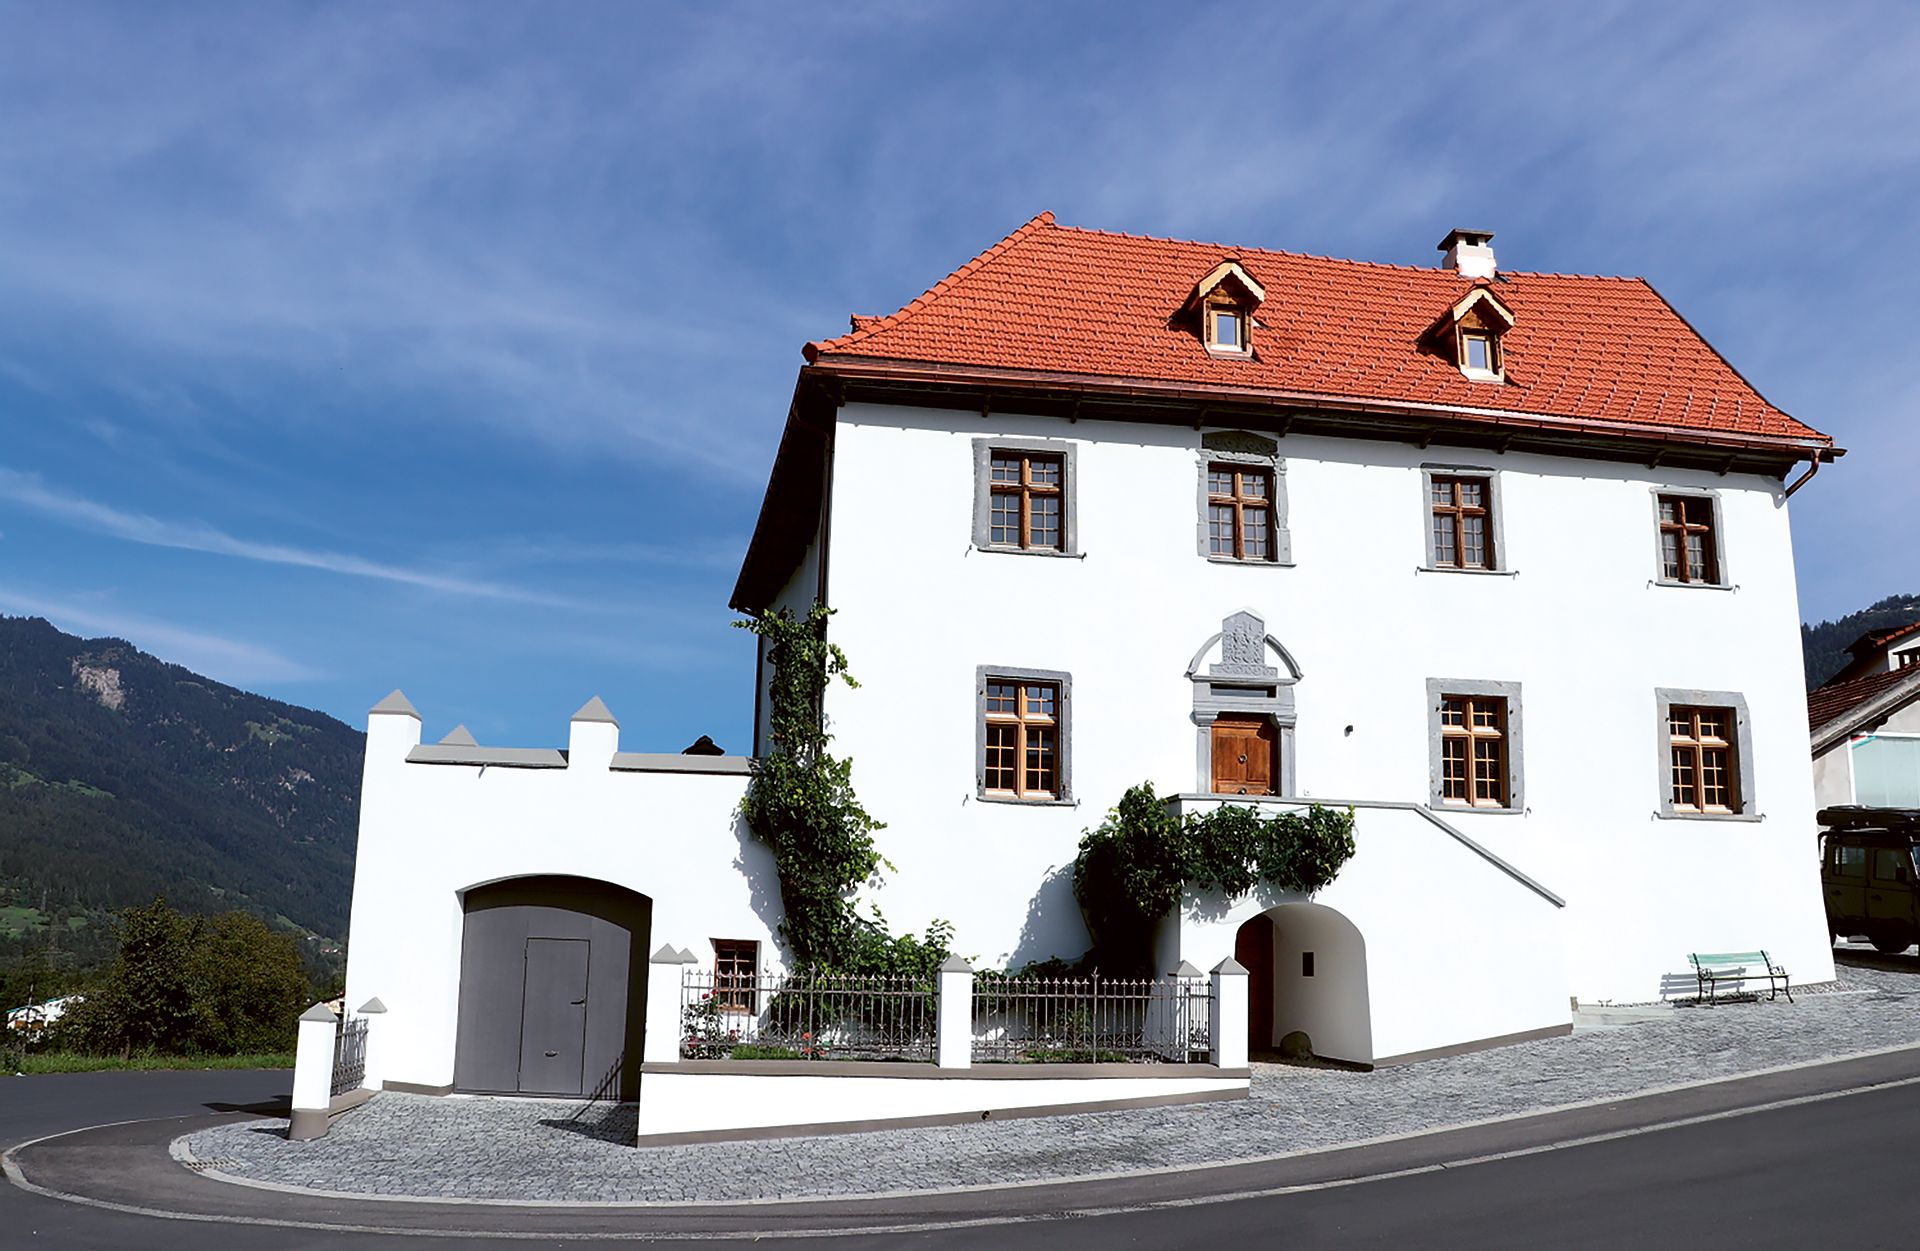 Das stattliche Patrizierhaus in Pratval aus dem 16. Jahrhundert diente früher Gutsherren.  